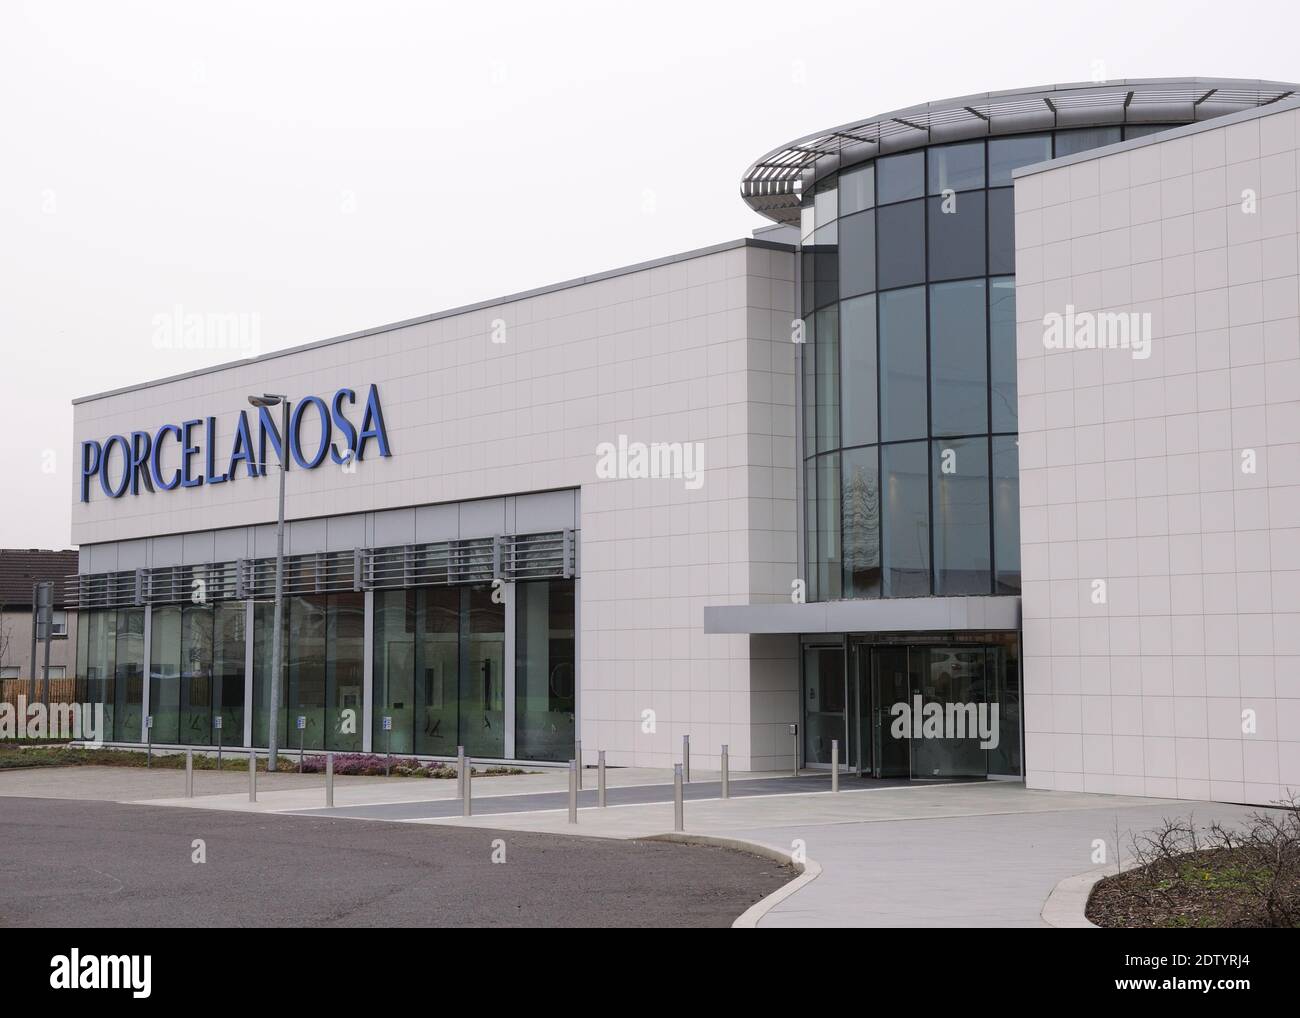 Porcelanosa Group est un fabricant, distributeur et détaillant espagnol de carreaux de céramique avec cette salle d'exposition située à Hillington, Glasgow, Écosse. Banque D'Images